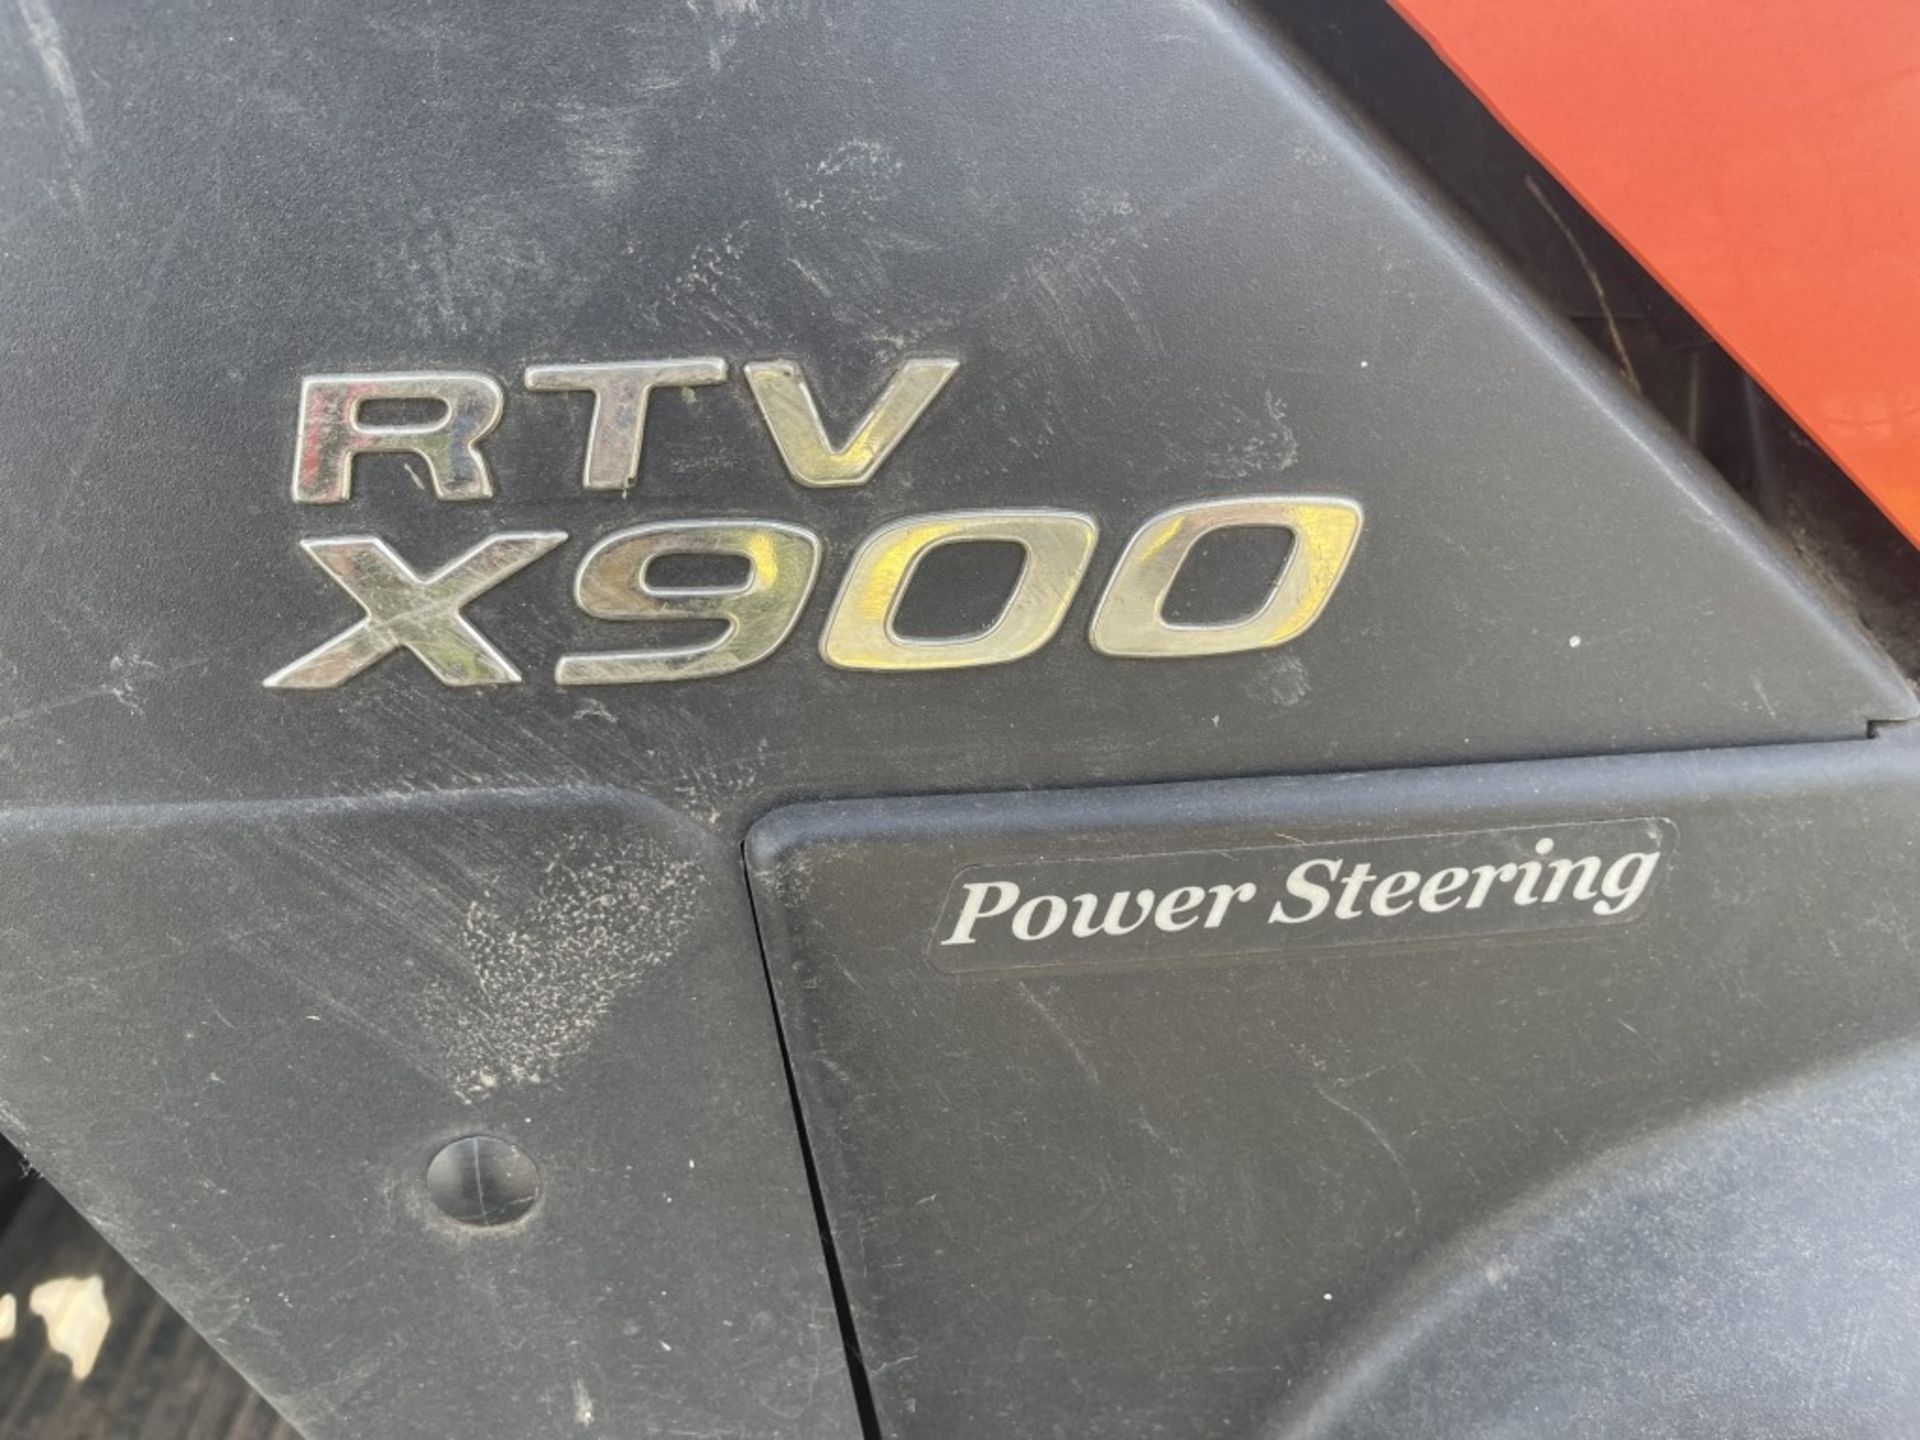 2018 Kubota RTV X900 4x4 Utility Cart - Image 24 of 25